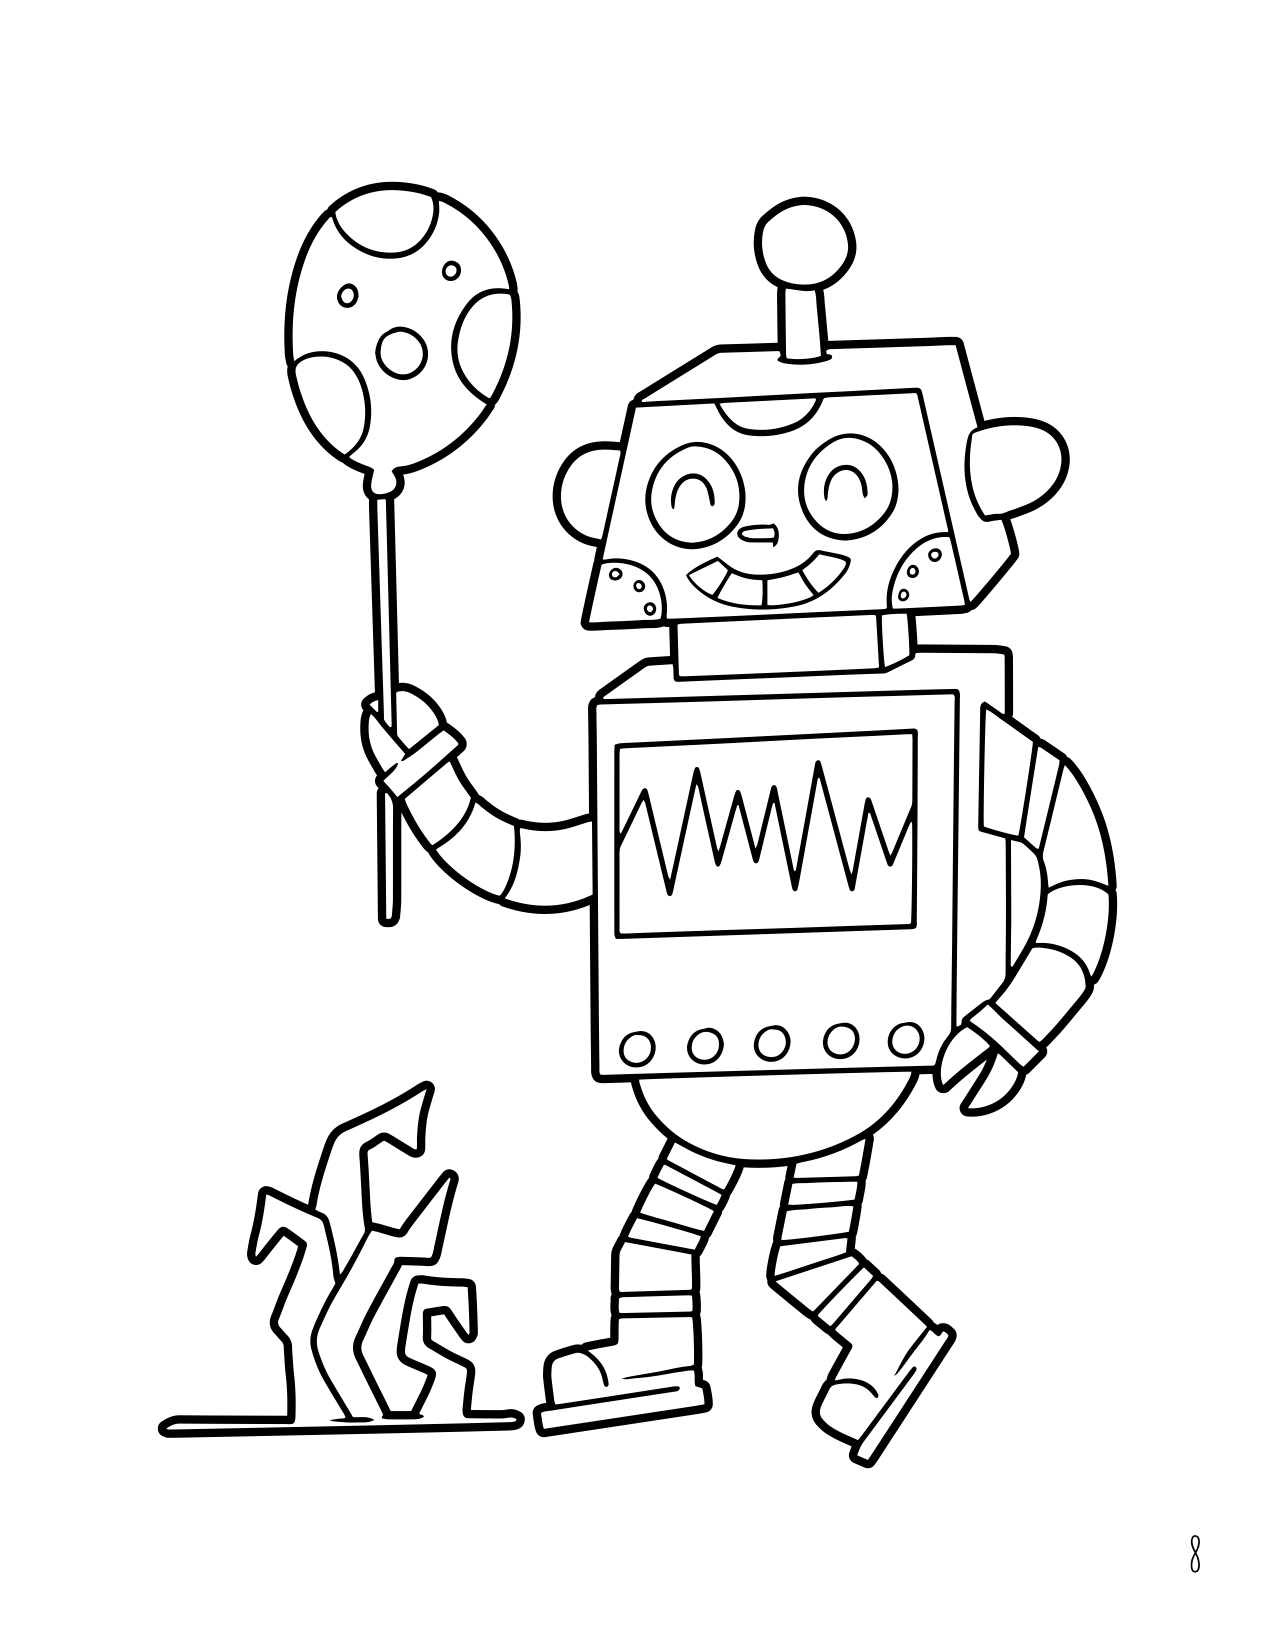 子供のための漫画風ロボットのぬり絵を描く